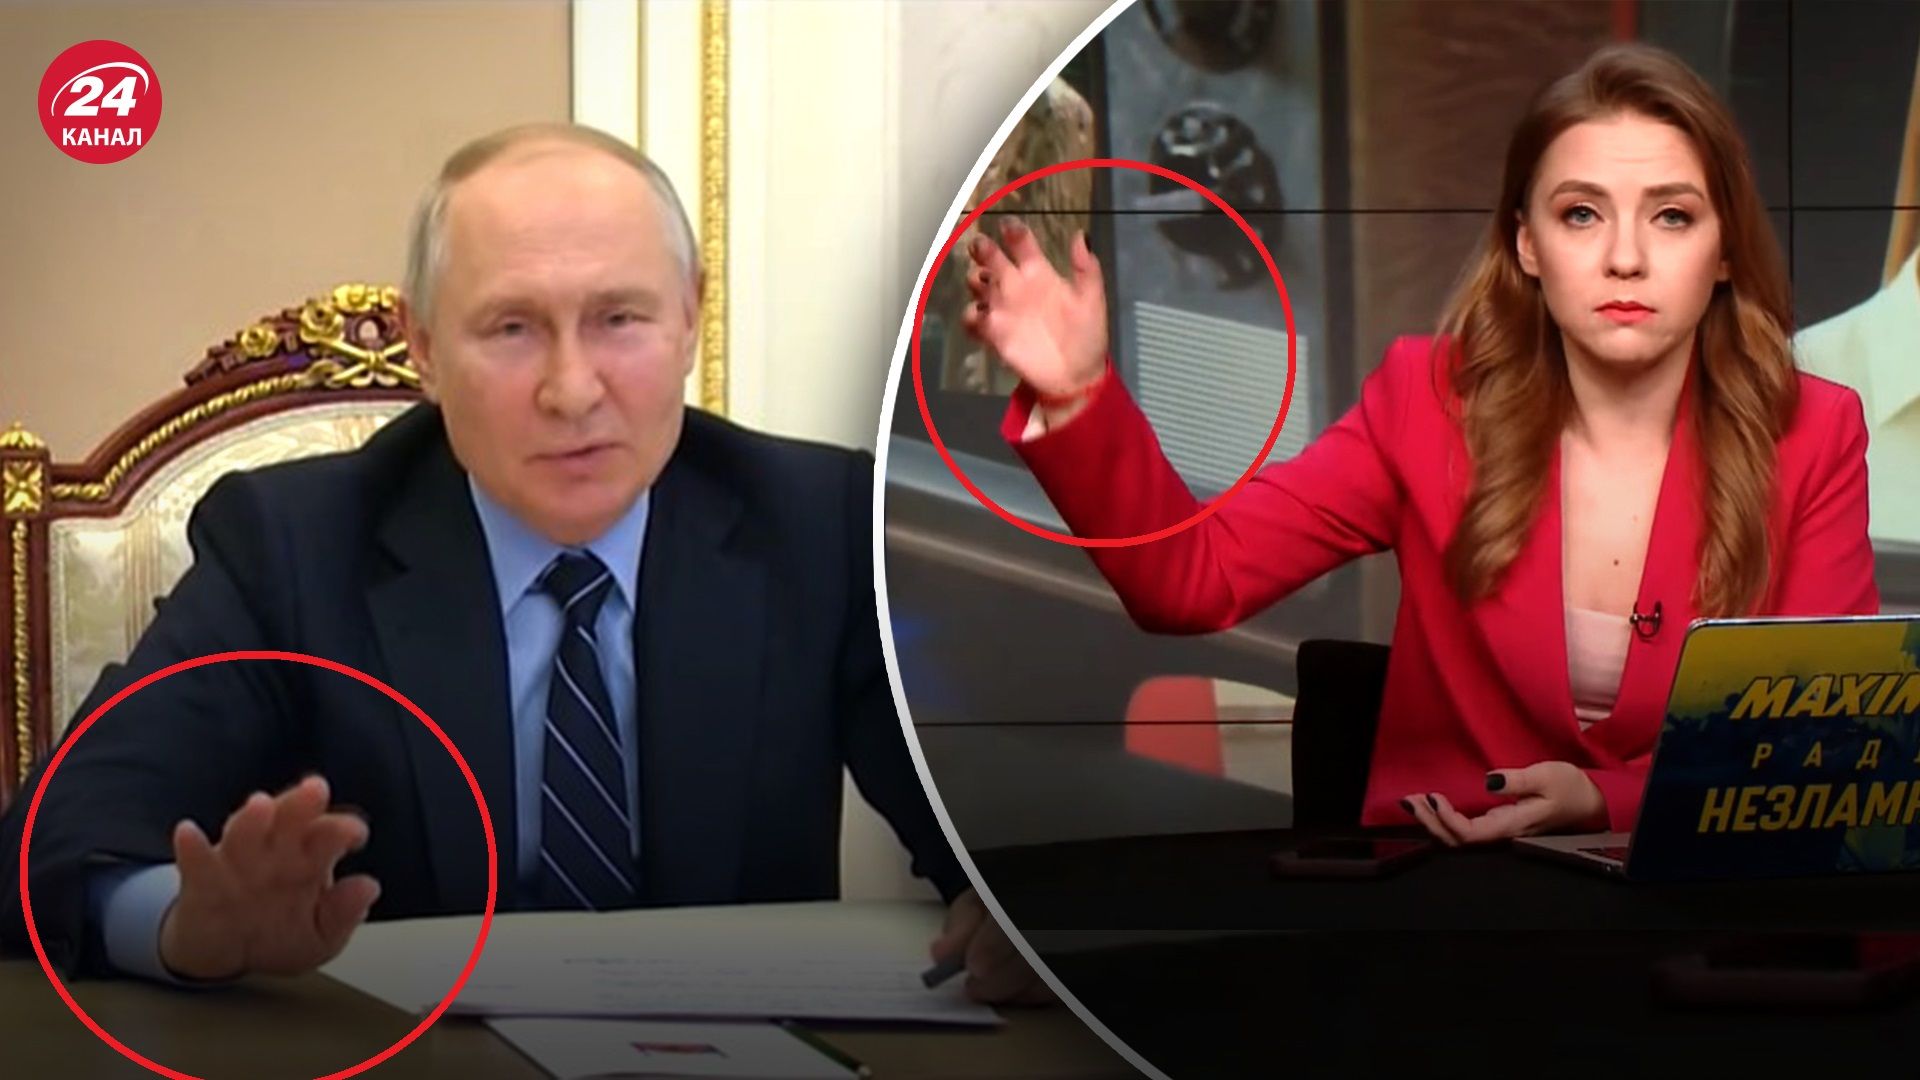  Новое видео Путина с рукой: реакция ведущей Екатерины Соляр - 24 Канал